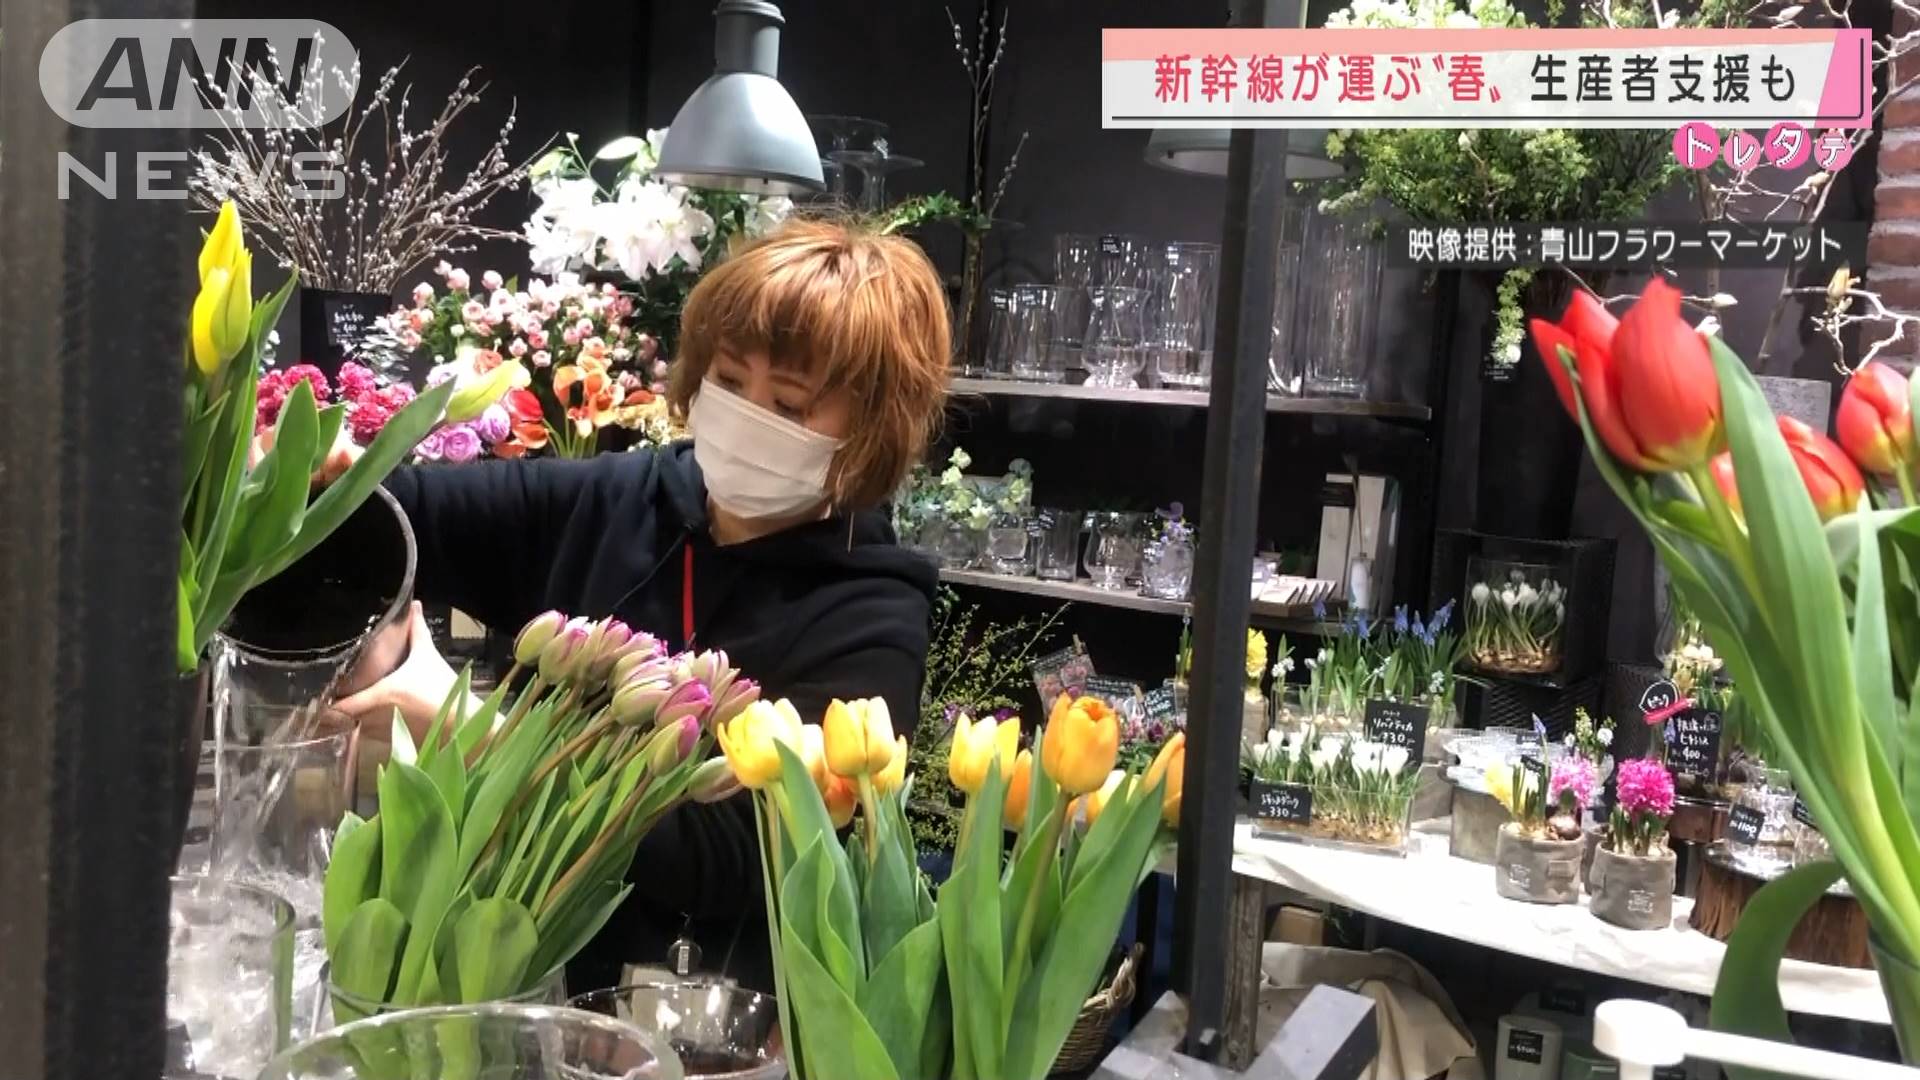 美しい花は新幹線に乗って 新潟からチューリップ テレ朝news テレビ朝日のニュースサイト